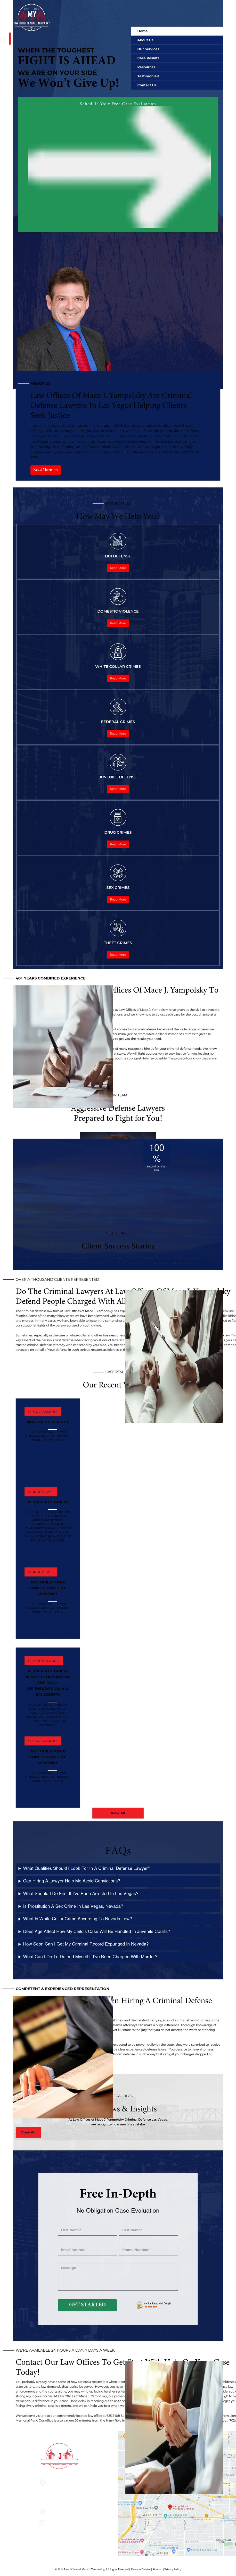 Yampolsky & Margolis Criminal Defense Las Vegas - Las Vegas NV Lawyers